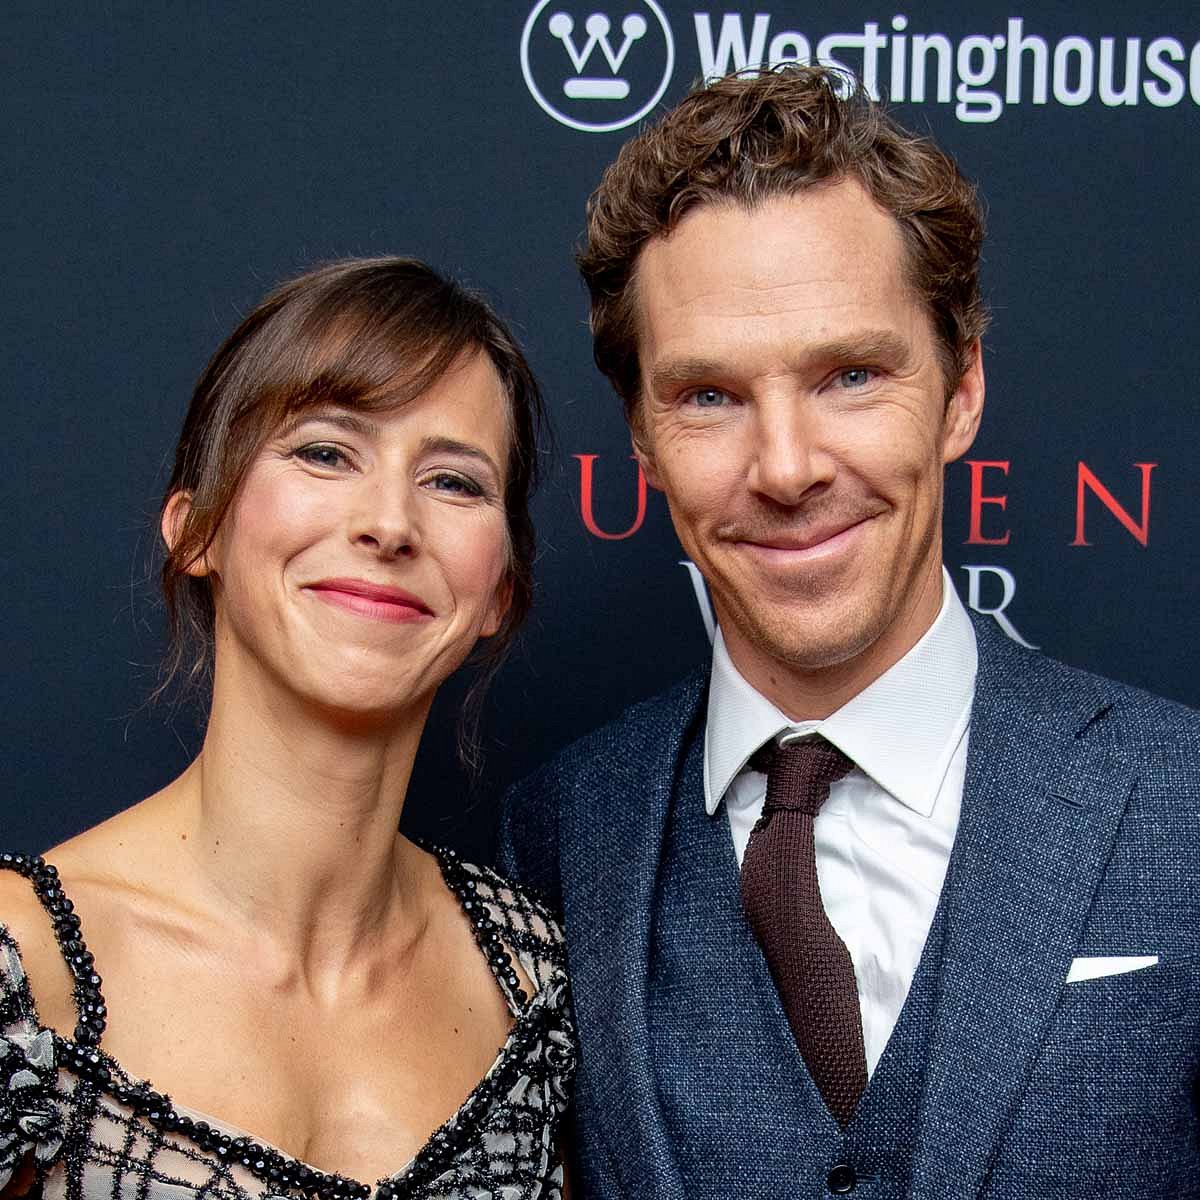 Wen die Marvel-Stars daten: Benedict Cumberbatch